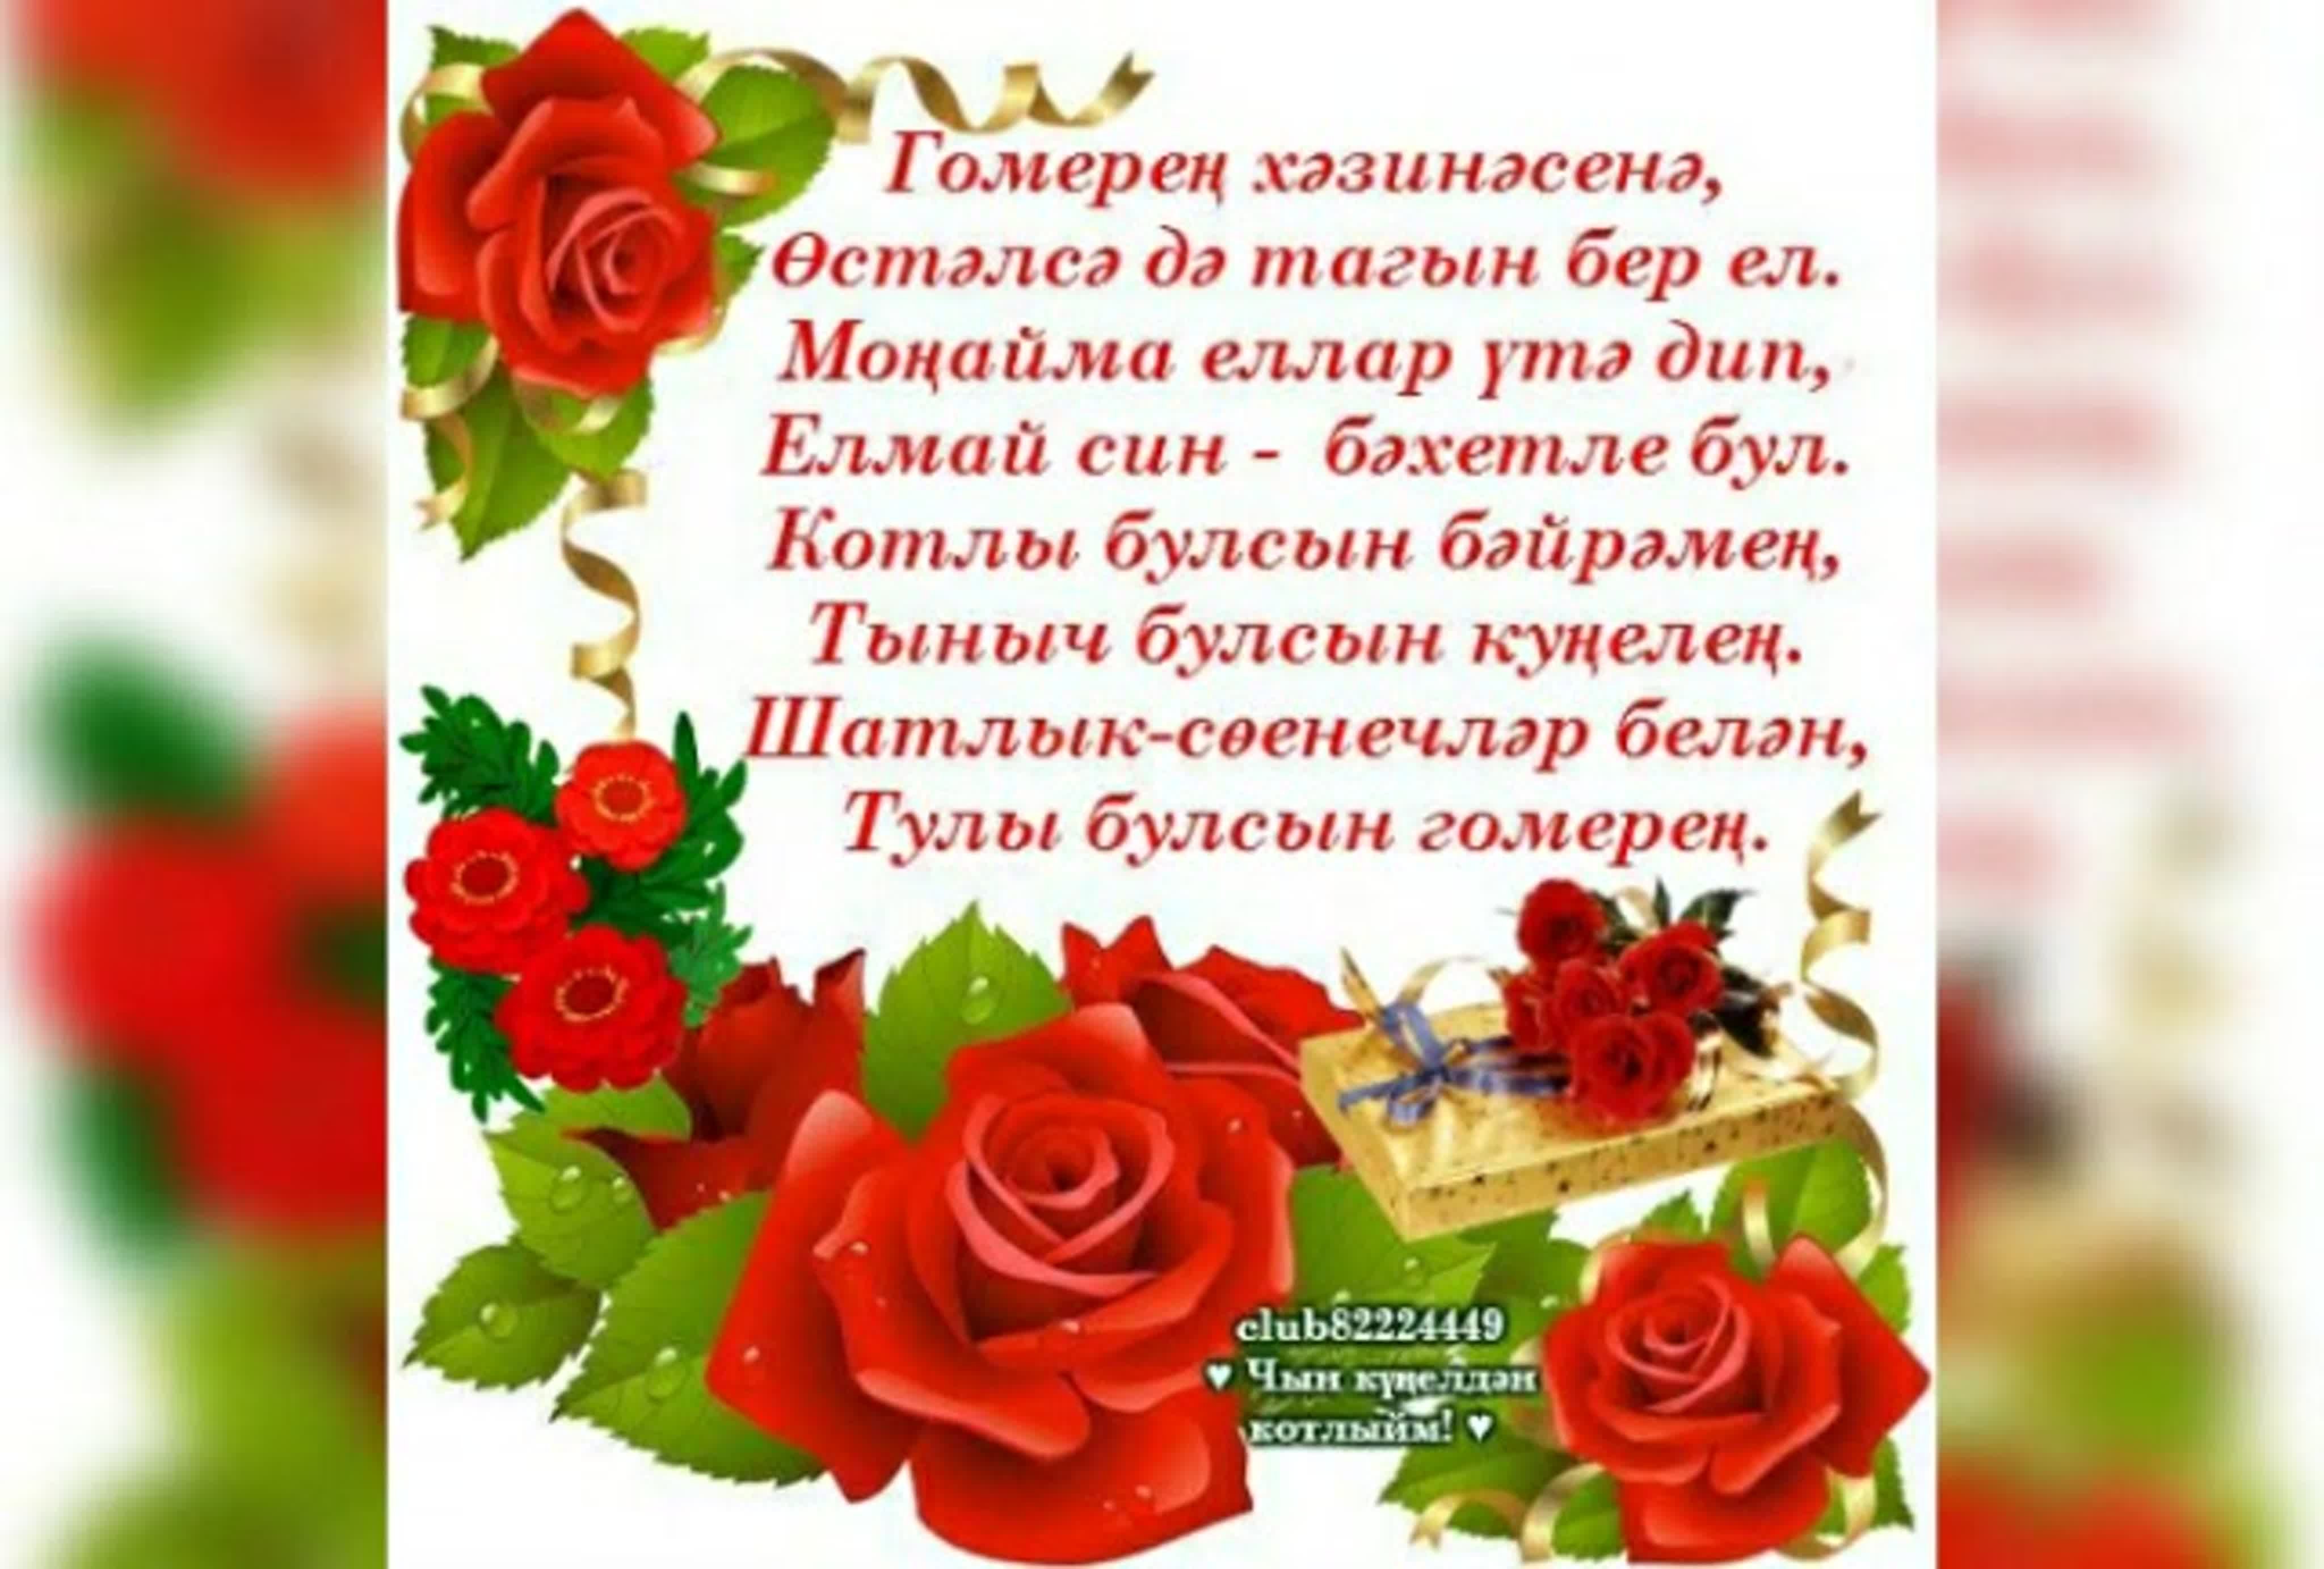 Поздравление на татарском языке подруге. Поздравления с днём рождения на татарском языке. Поздравление на татарском языке. Татарские поздравления с днем рождения. Поздравления с днём рождения женщине на татарском языке.